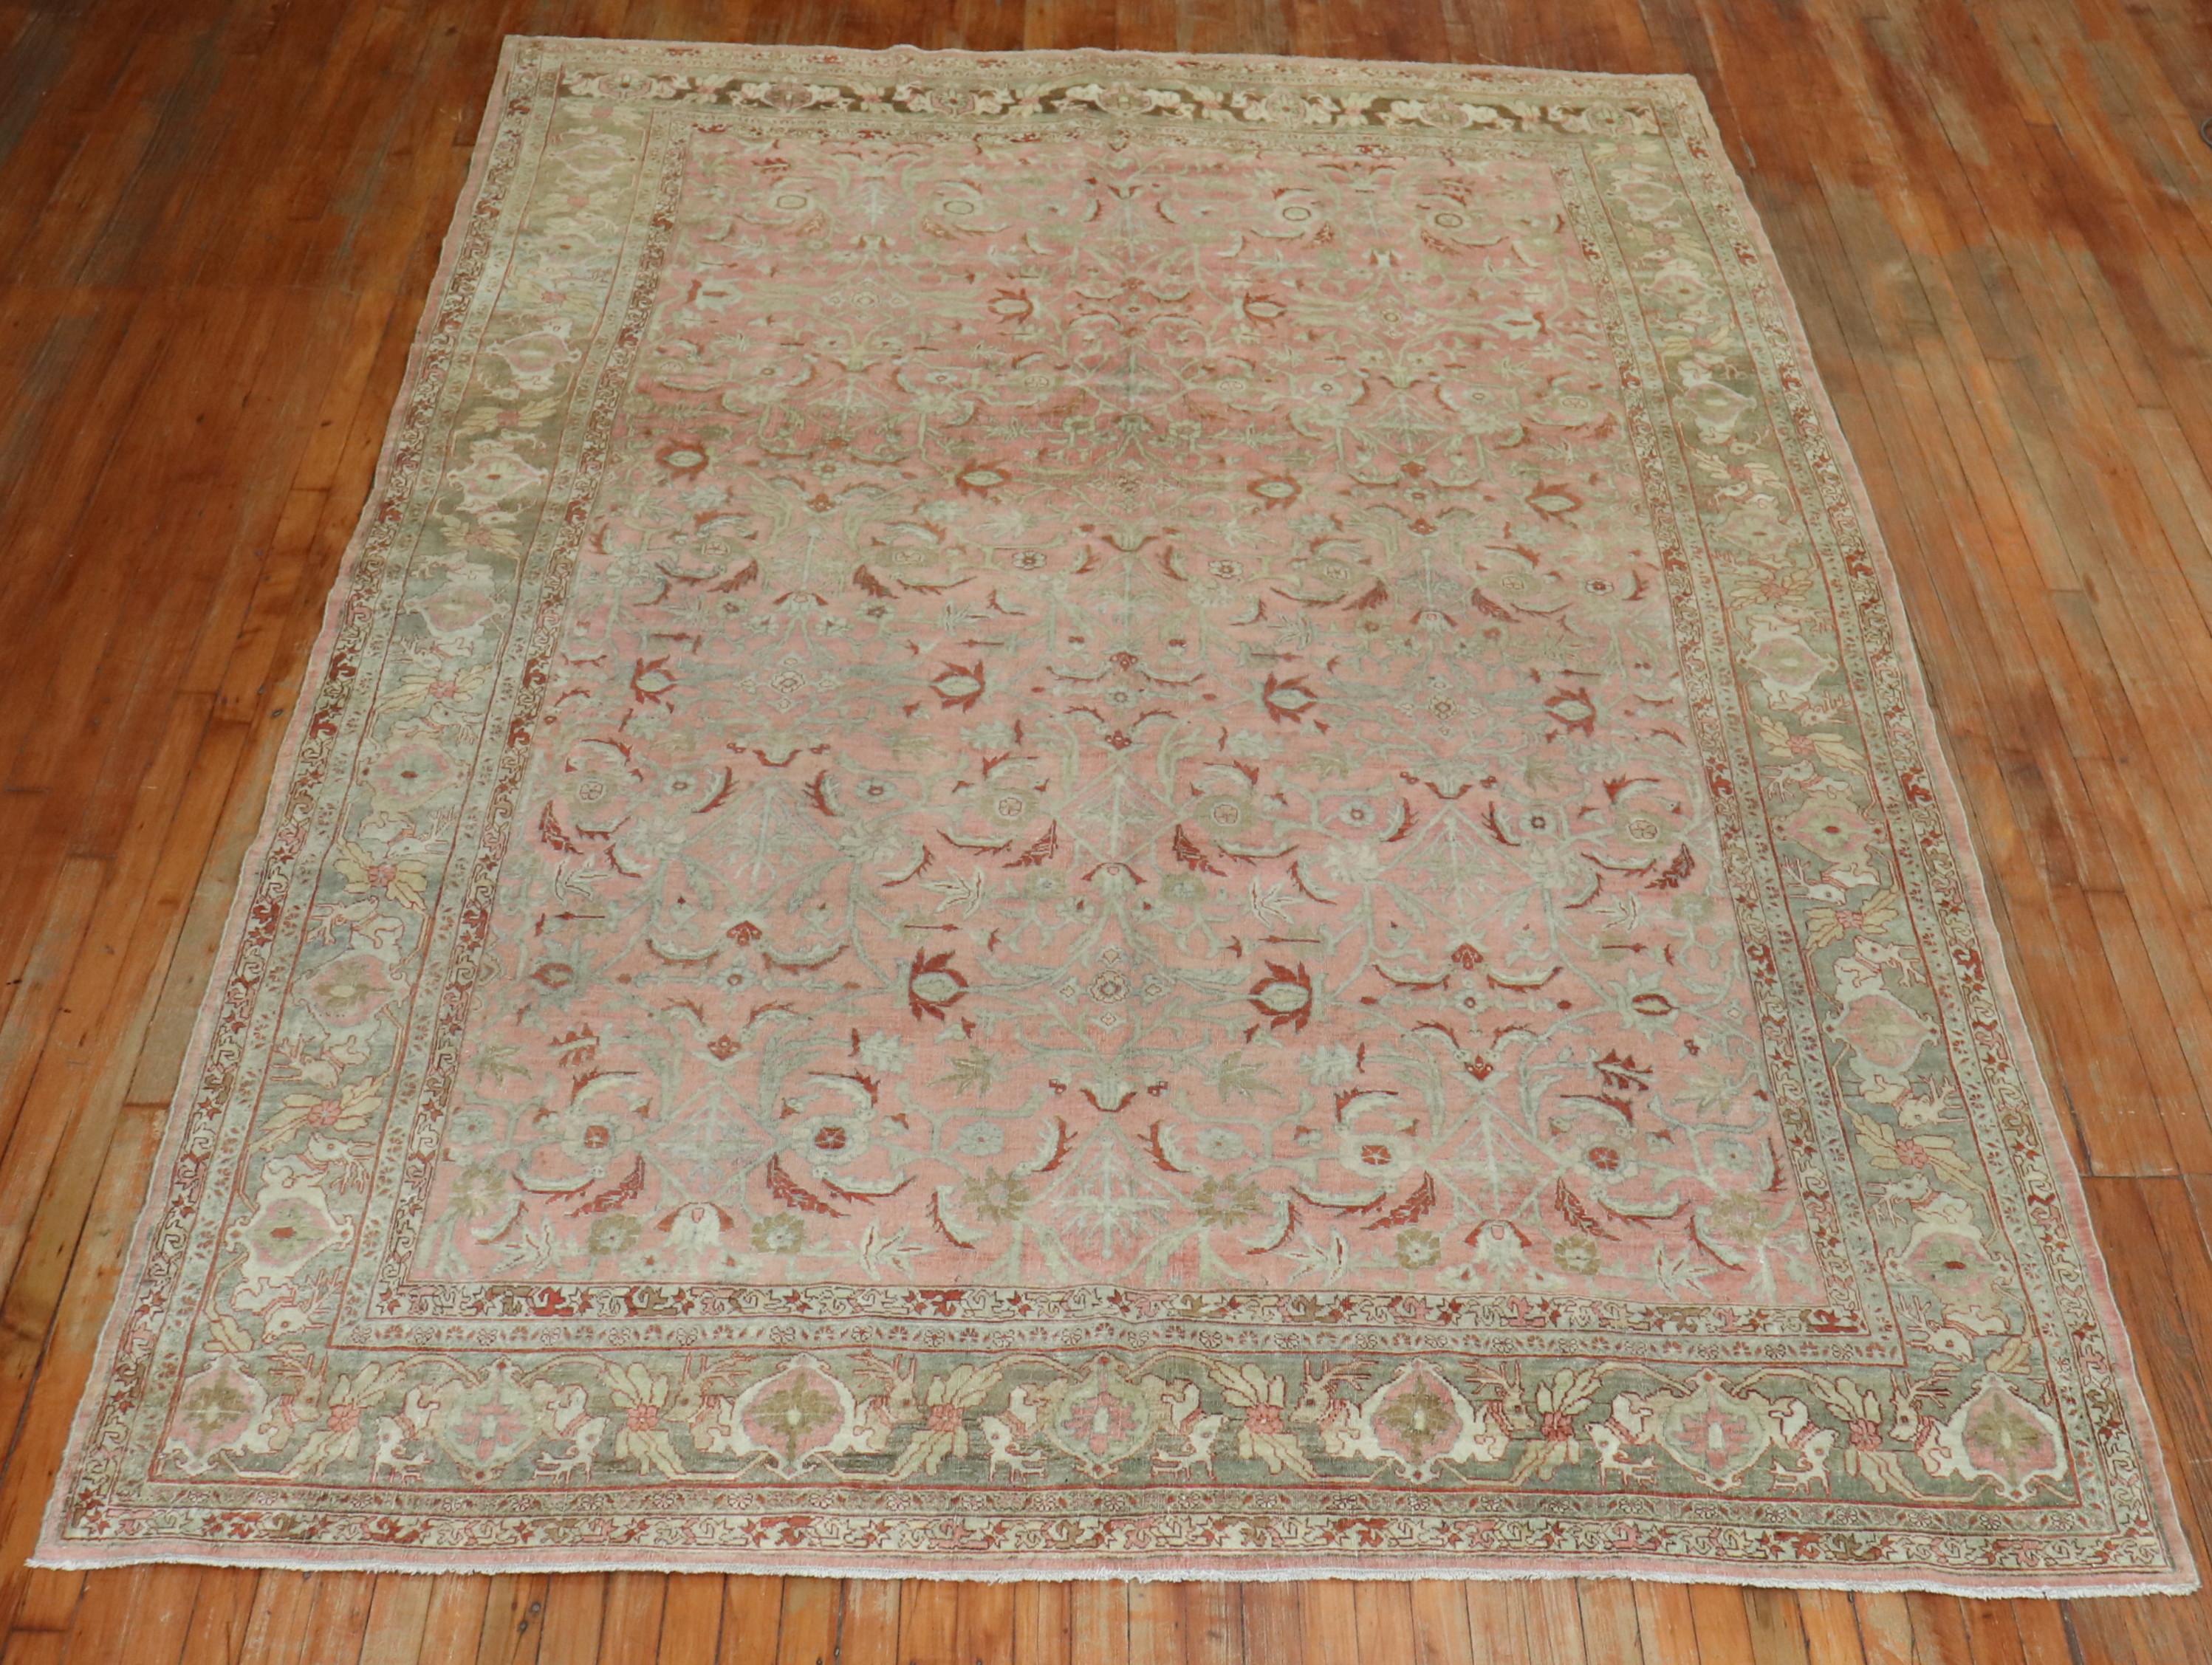 Ein zimmergroßer persischer Bidjar-Teppich aus dem frühen 20. Jahrhundert mit einem eleganten floralen Allover-Muster auf rosa Grund. Die Umrandung ist grau und mit Hirschkopfmotiven durchzogen.

Maße: 7'5